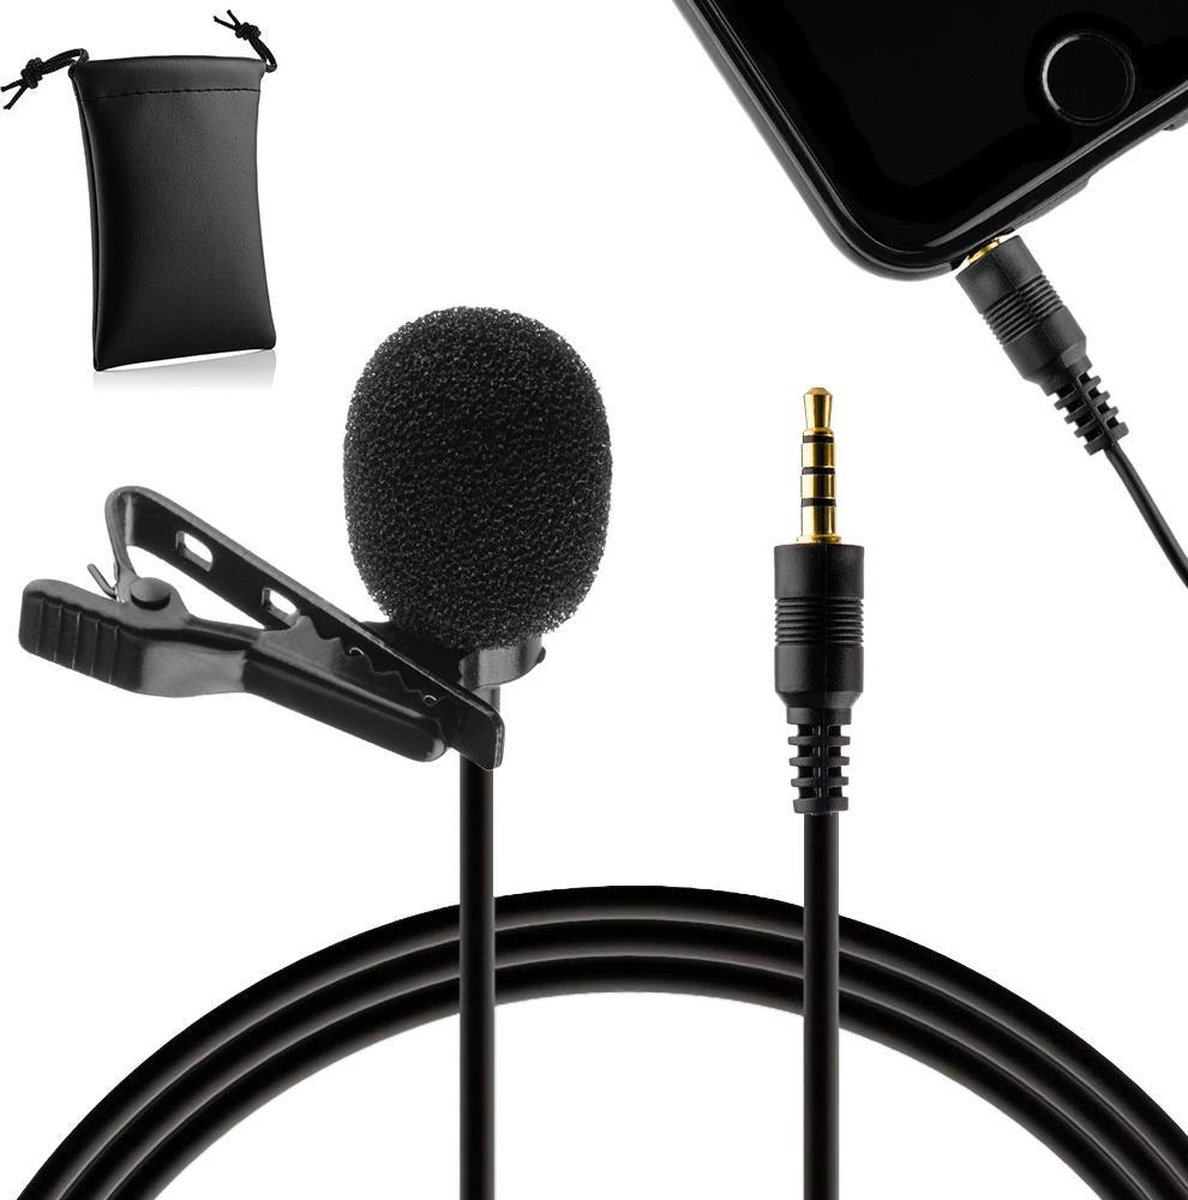 MOJOGEAR Speldmicrofoon voor Smartphones/Tablets/Telefoons - 1,5 meter kabel - 3.5 mm koptelefoon-aansluiting - Zwart